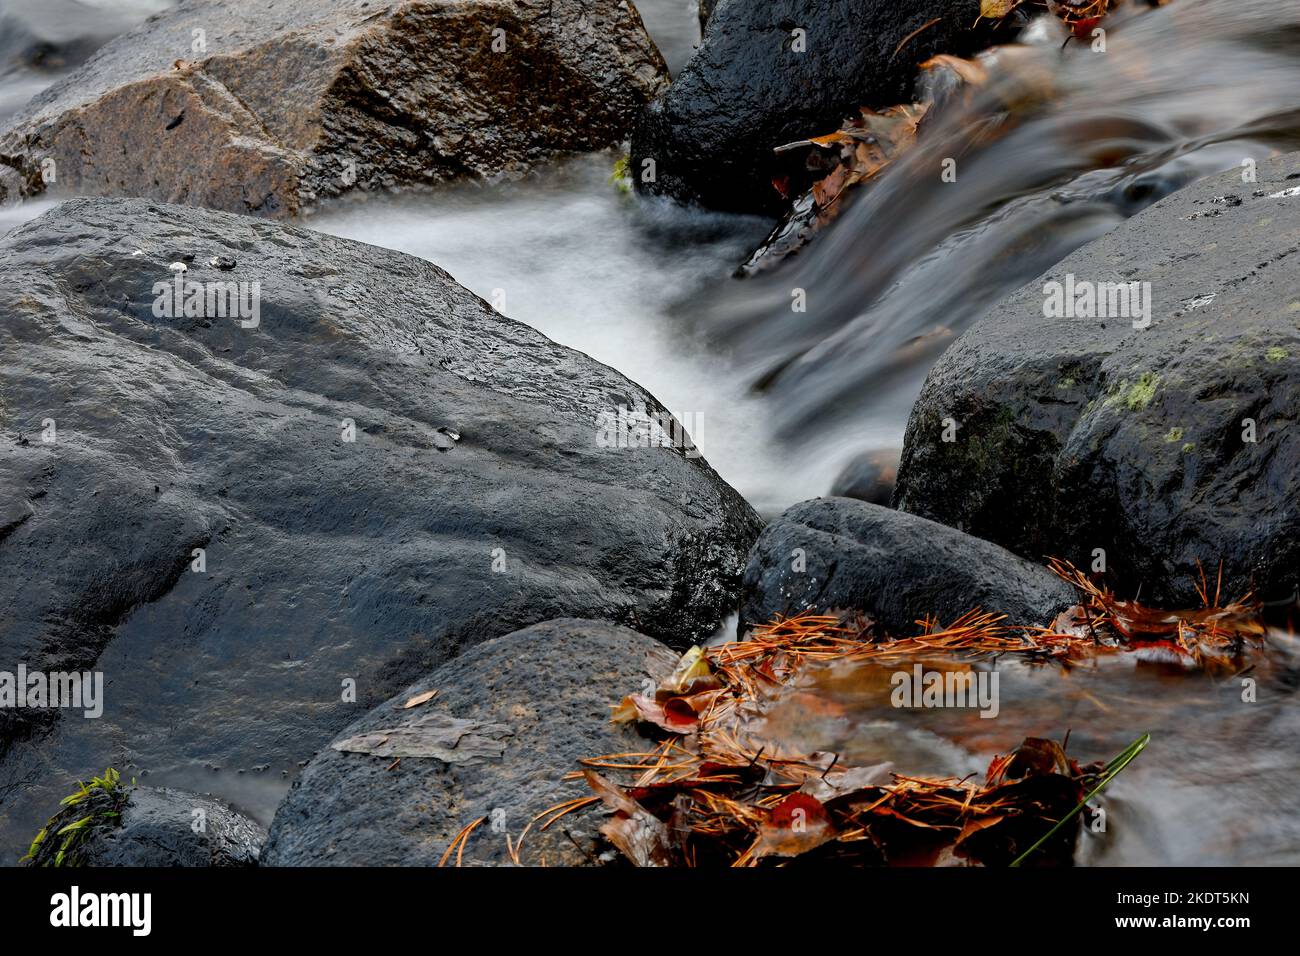 L'eau coule sur les roches dans les rapides en mouvement lent Banque D'Images